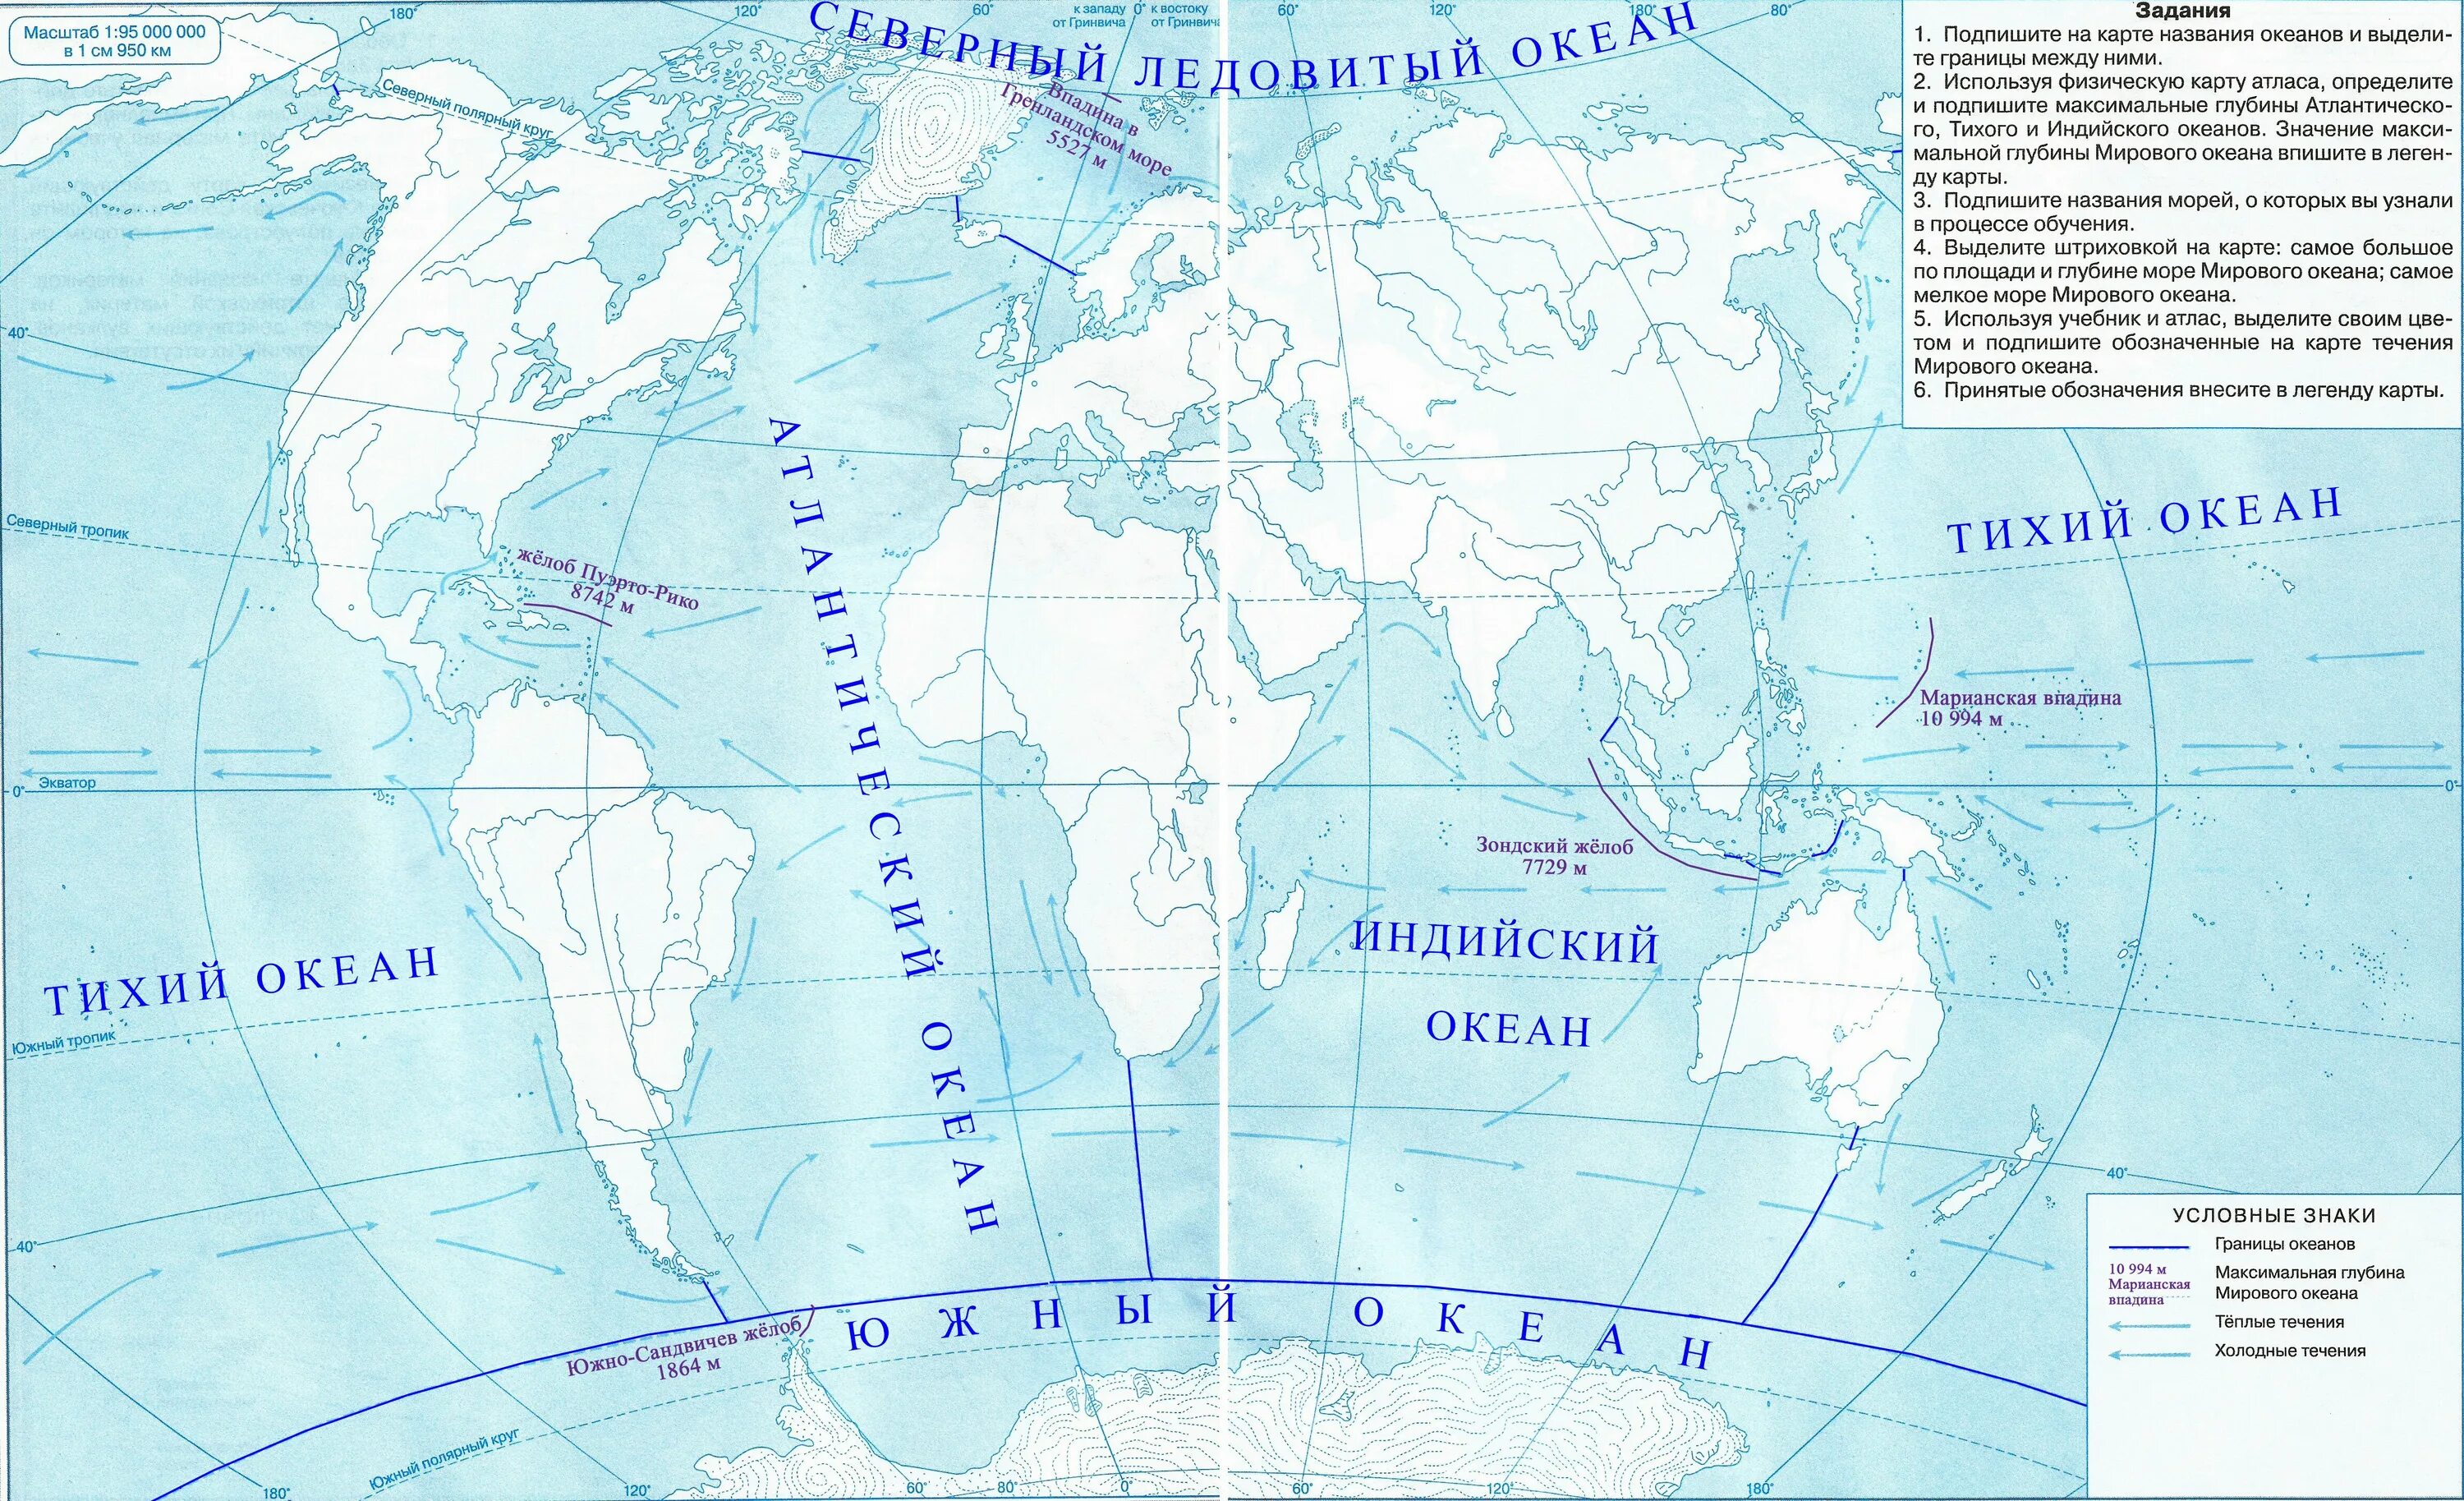 Контурная карта дрофа 10 класс распечатать. Контурная карта Тихого океана. Контурная карта по географии 5 класс карта мирового океана. Карта мирового океана 6 класс контурная карта атлас по географии. Максимальная глубина мирового океана на контурной карте.